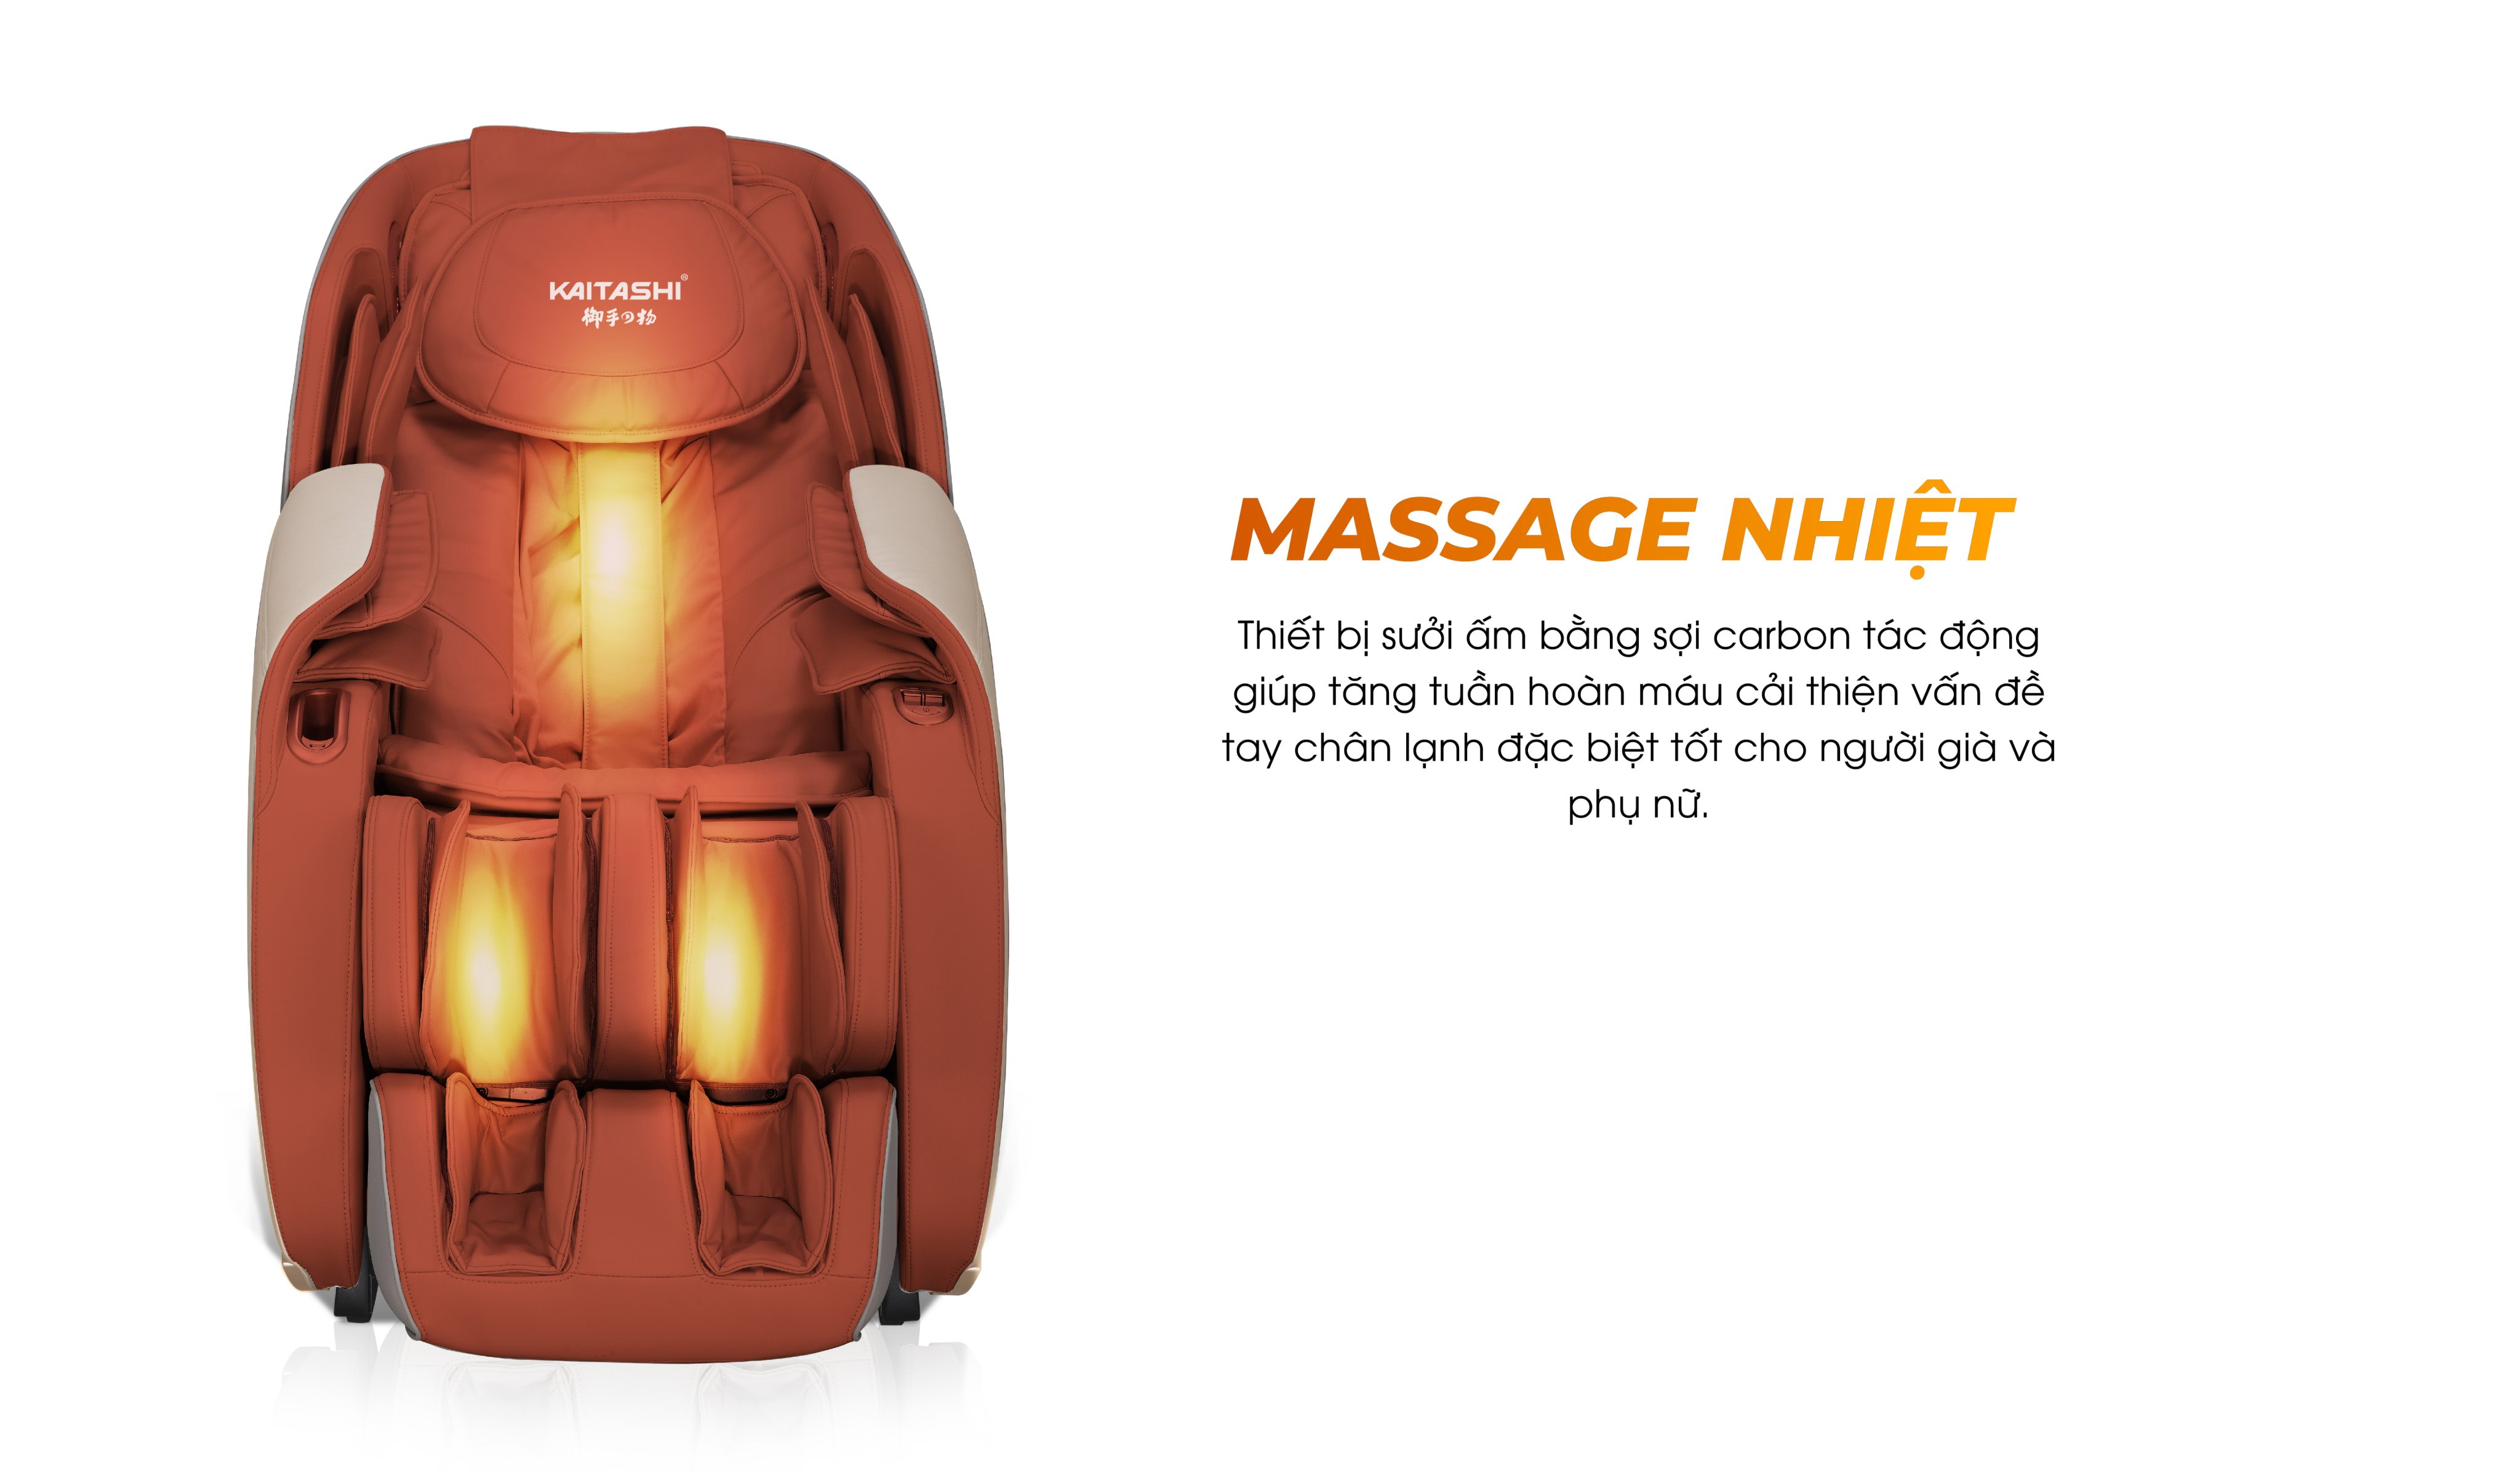 Massage nhiệt giúp kích thích lưu thông tuần hoàn máu